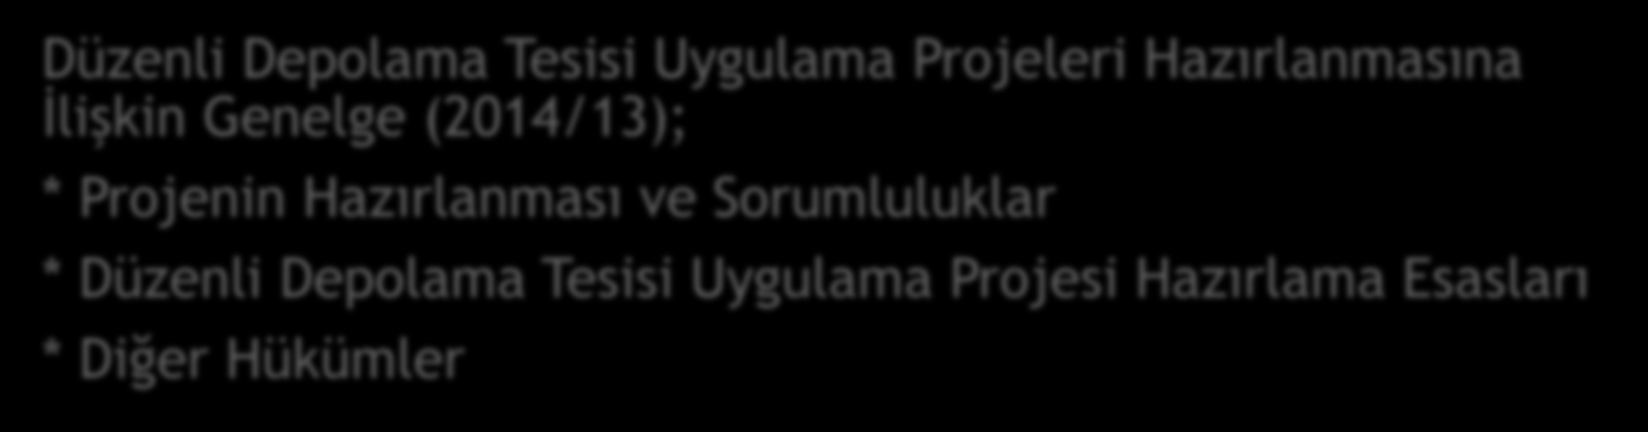 Düzenli Depolama Uygulama Projeleri Düzenli Depolama Tesisi Uygulama Projeleri Hazırlanmasına İlişkin Genelge (2014/13);